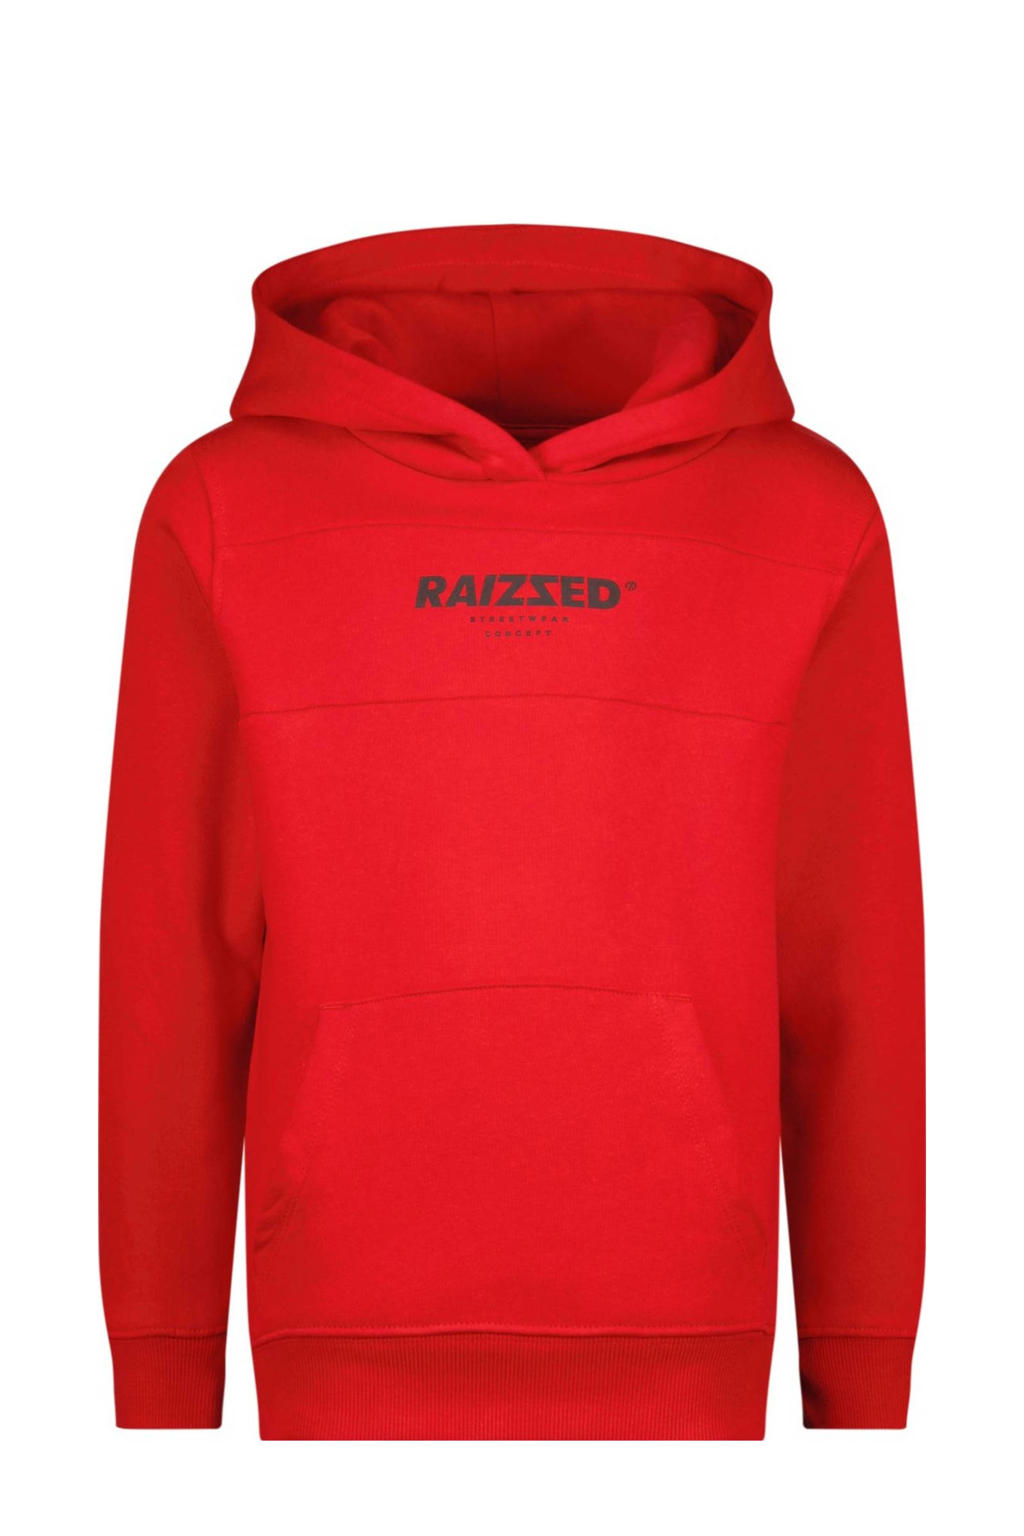 Rode jongens Raizzed hoodie Pinesburg van sweat materiaal met logo dessin, lange mouwen en capuchon